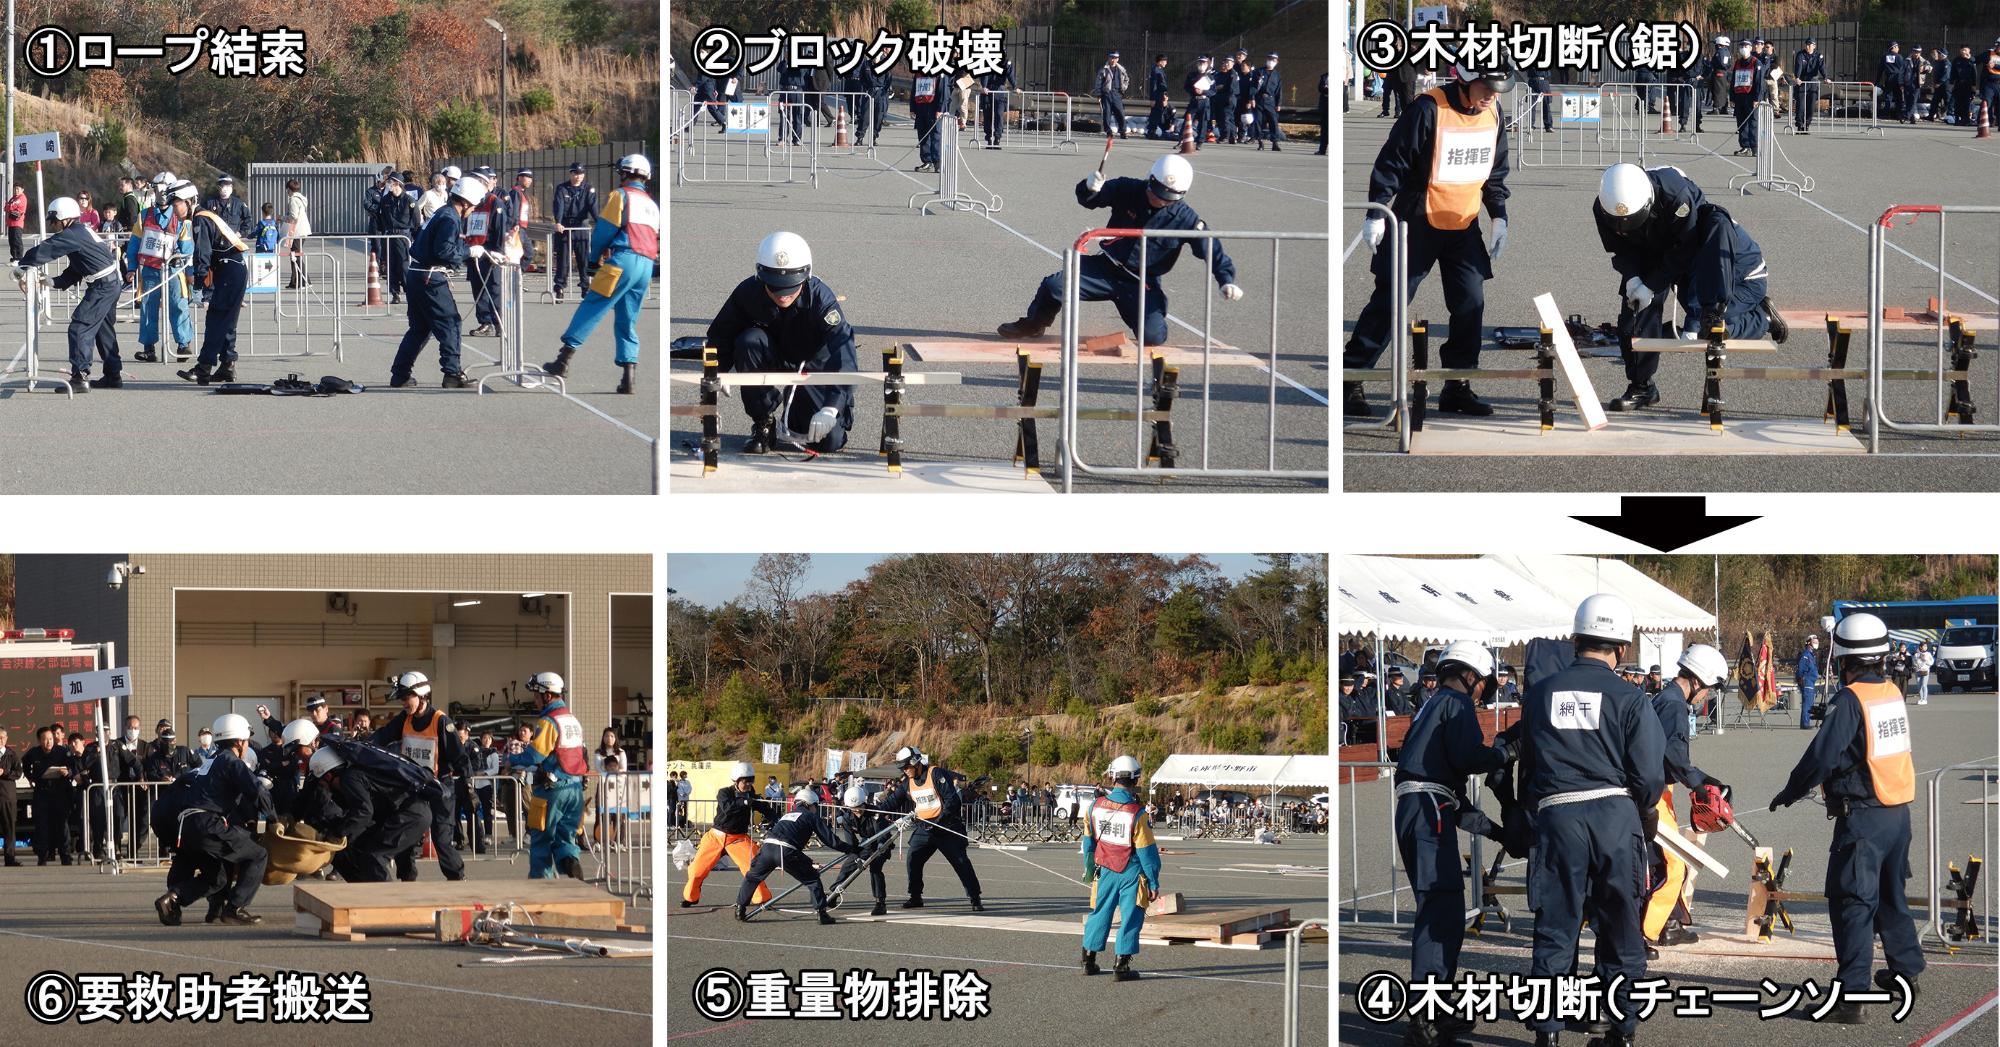 県警察フェニックスレスキュー競技大会での競技の流れ